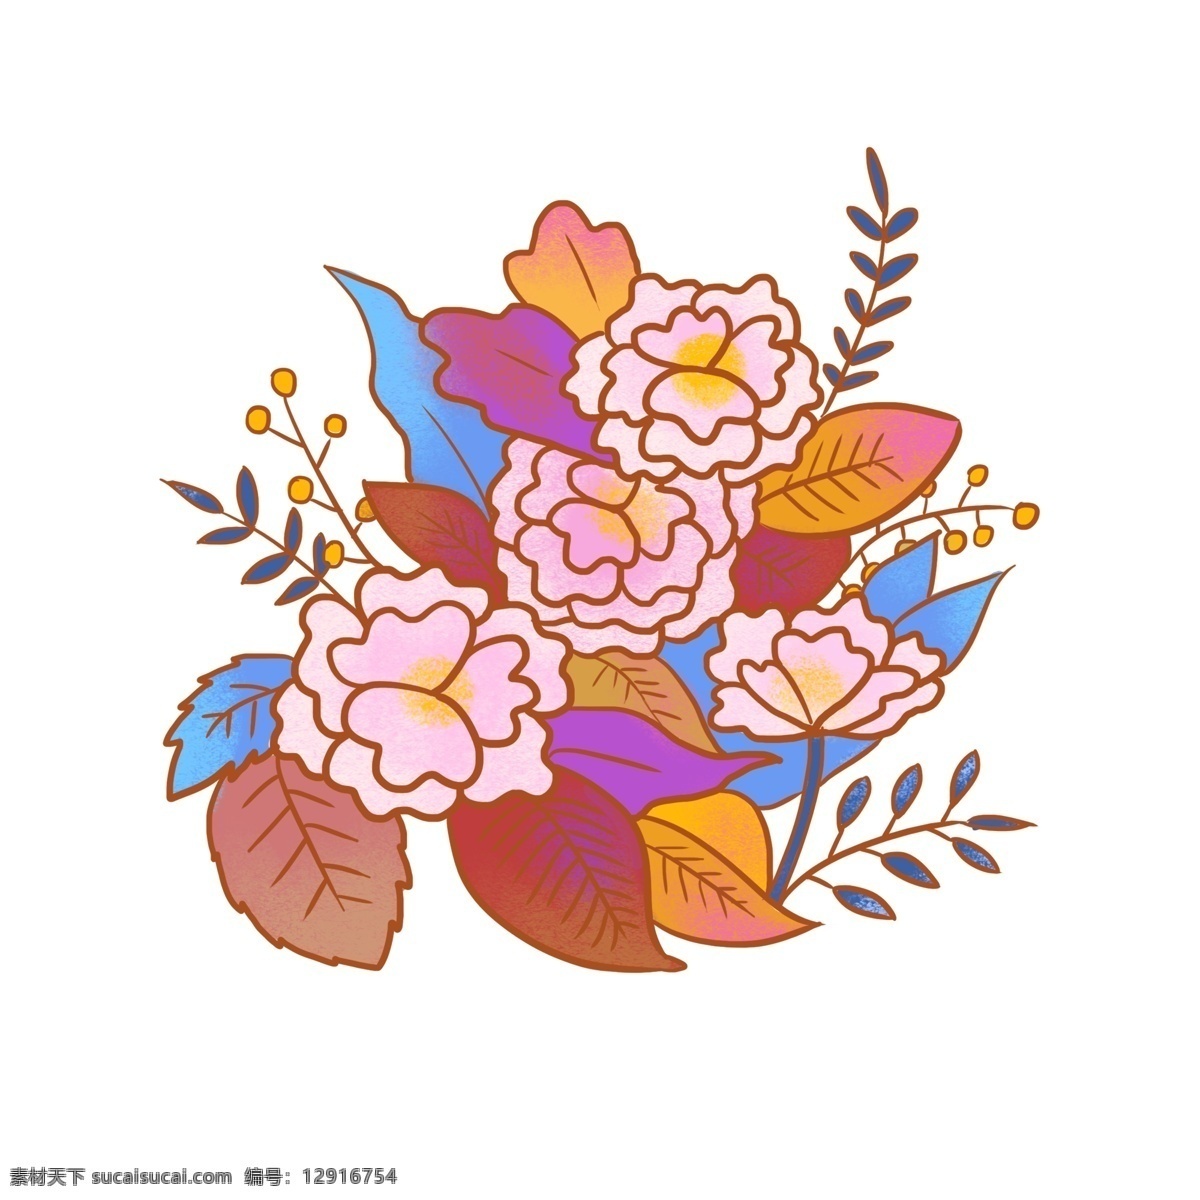 卡通 可爱 手绘 花朵 花卉 花束 彩色 元素 图案 叶子 花丛